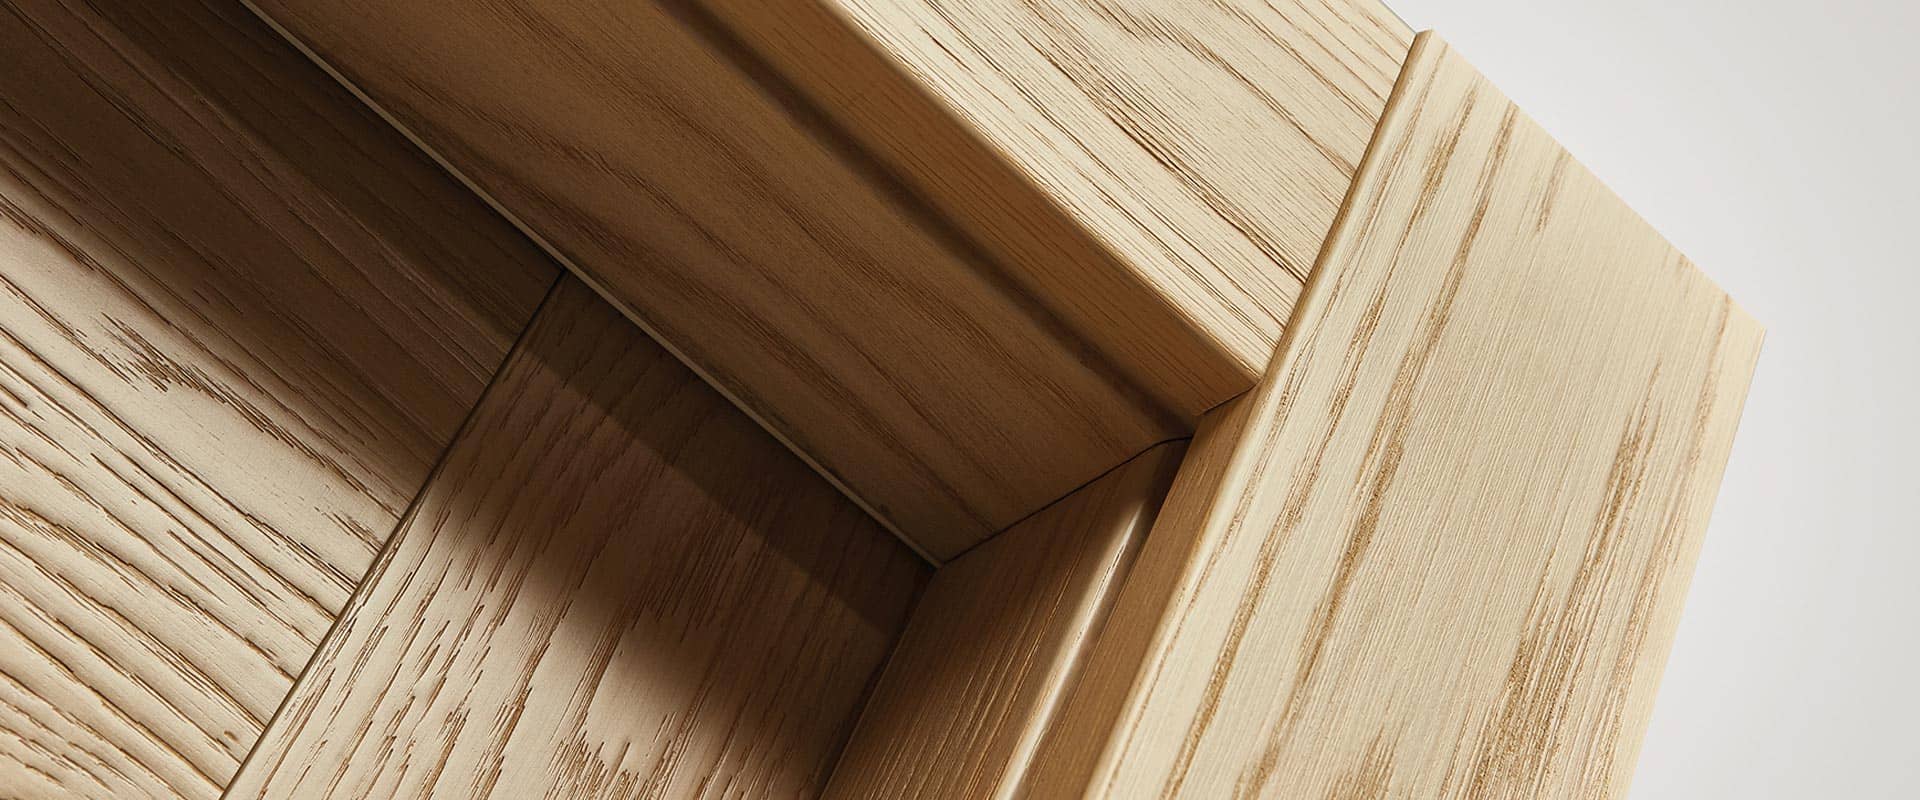 telaio porte interne in legno